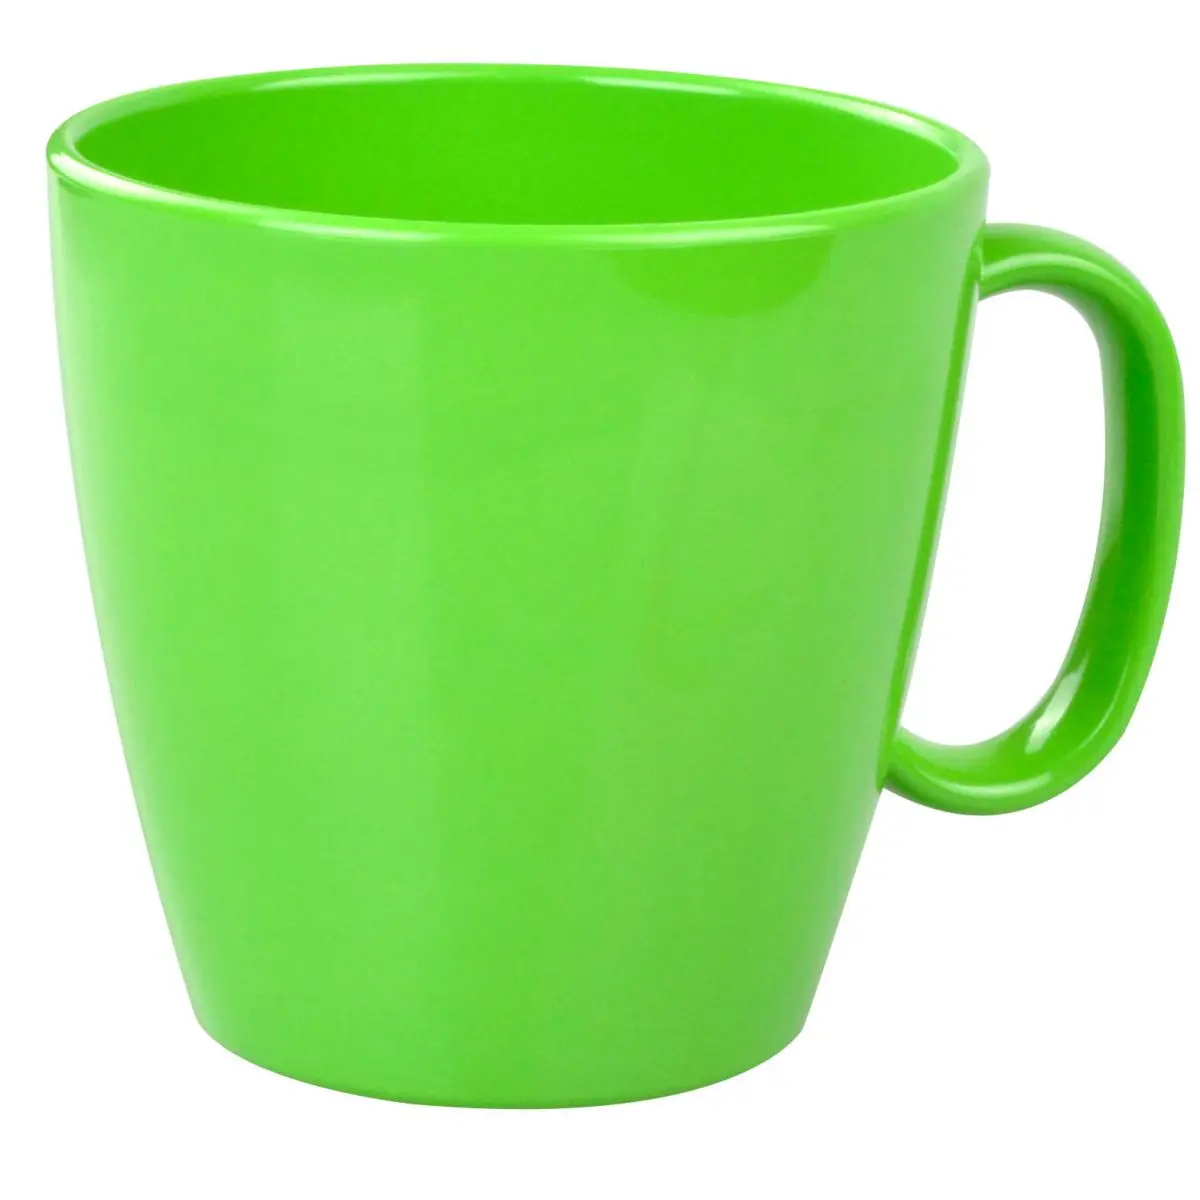 Riad série PBT - pohár 230 ml, kiwi zelená